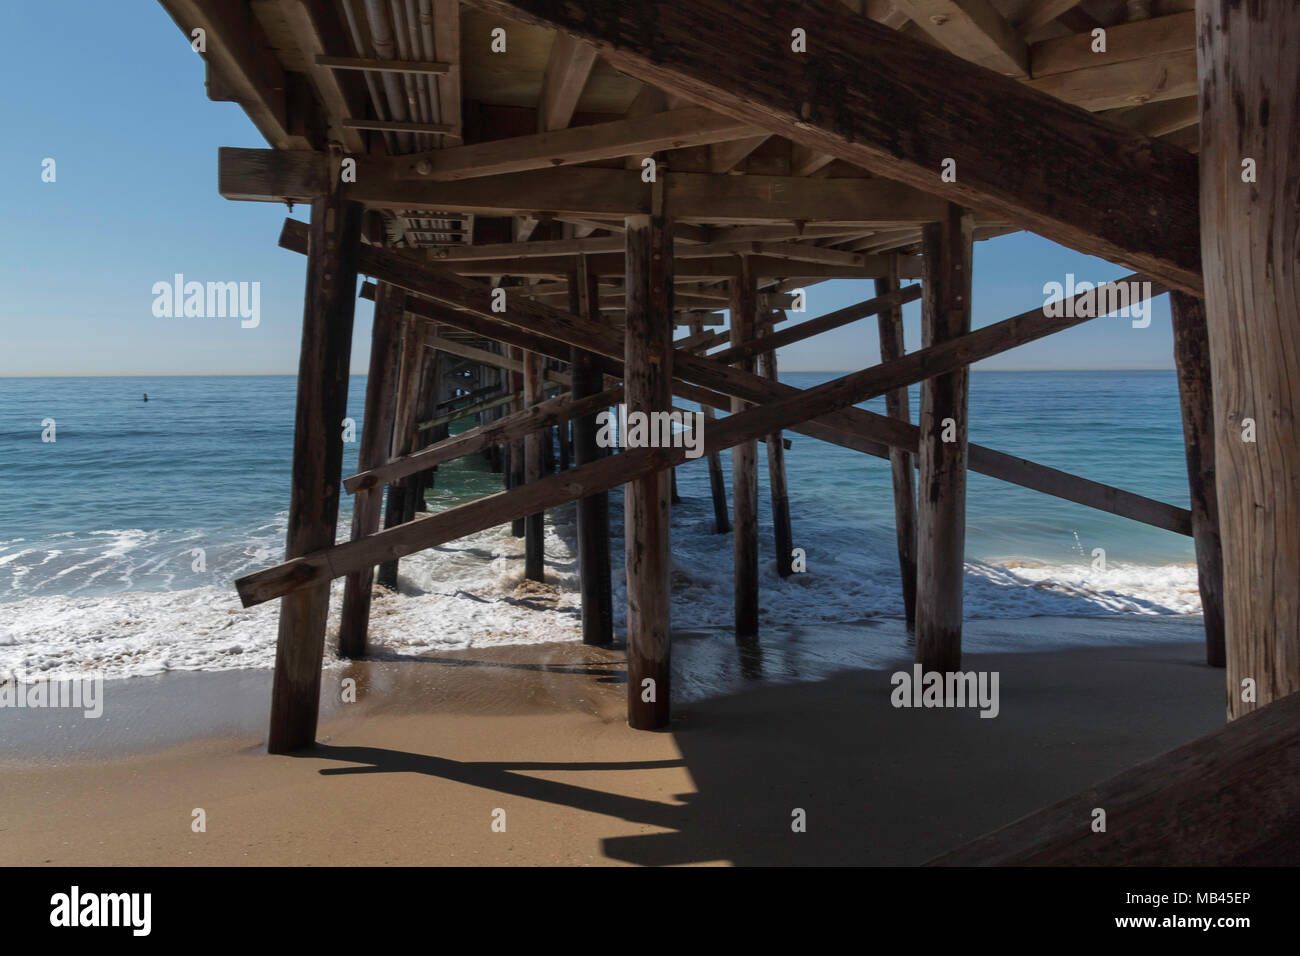 Unter der hölzernen Pier, Holz- Details", blauen Ozean, Pazifik, Sand, sonnig, Misty, Tageslicht, Sommer, Urlaub, Newport Beach, Kalifornien Stockfoto